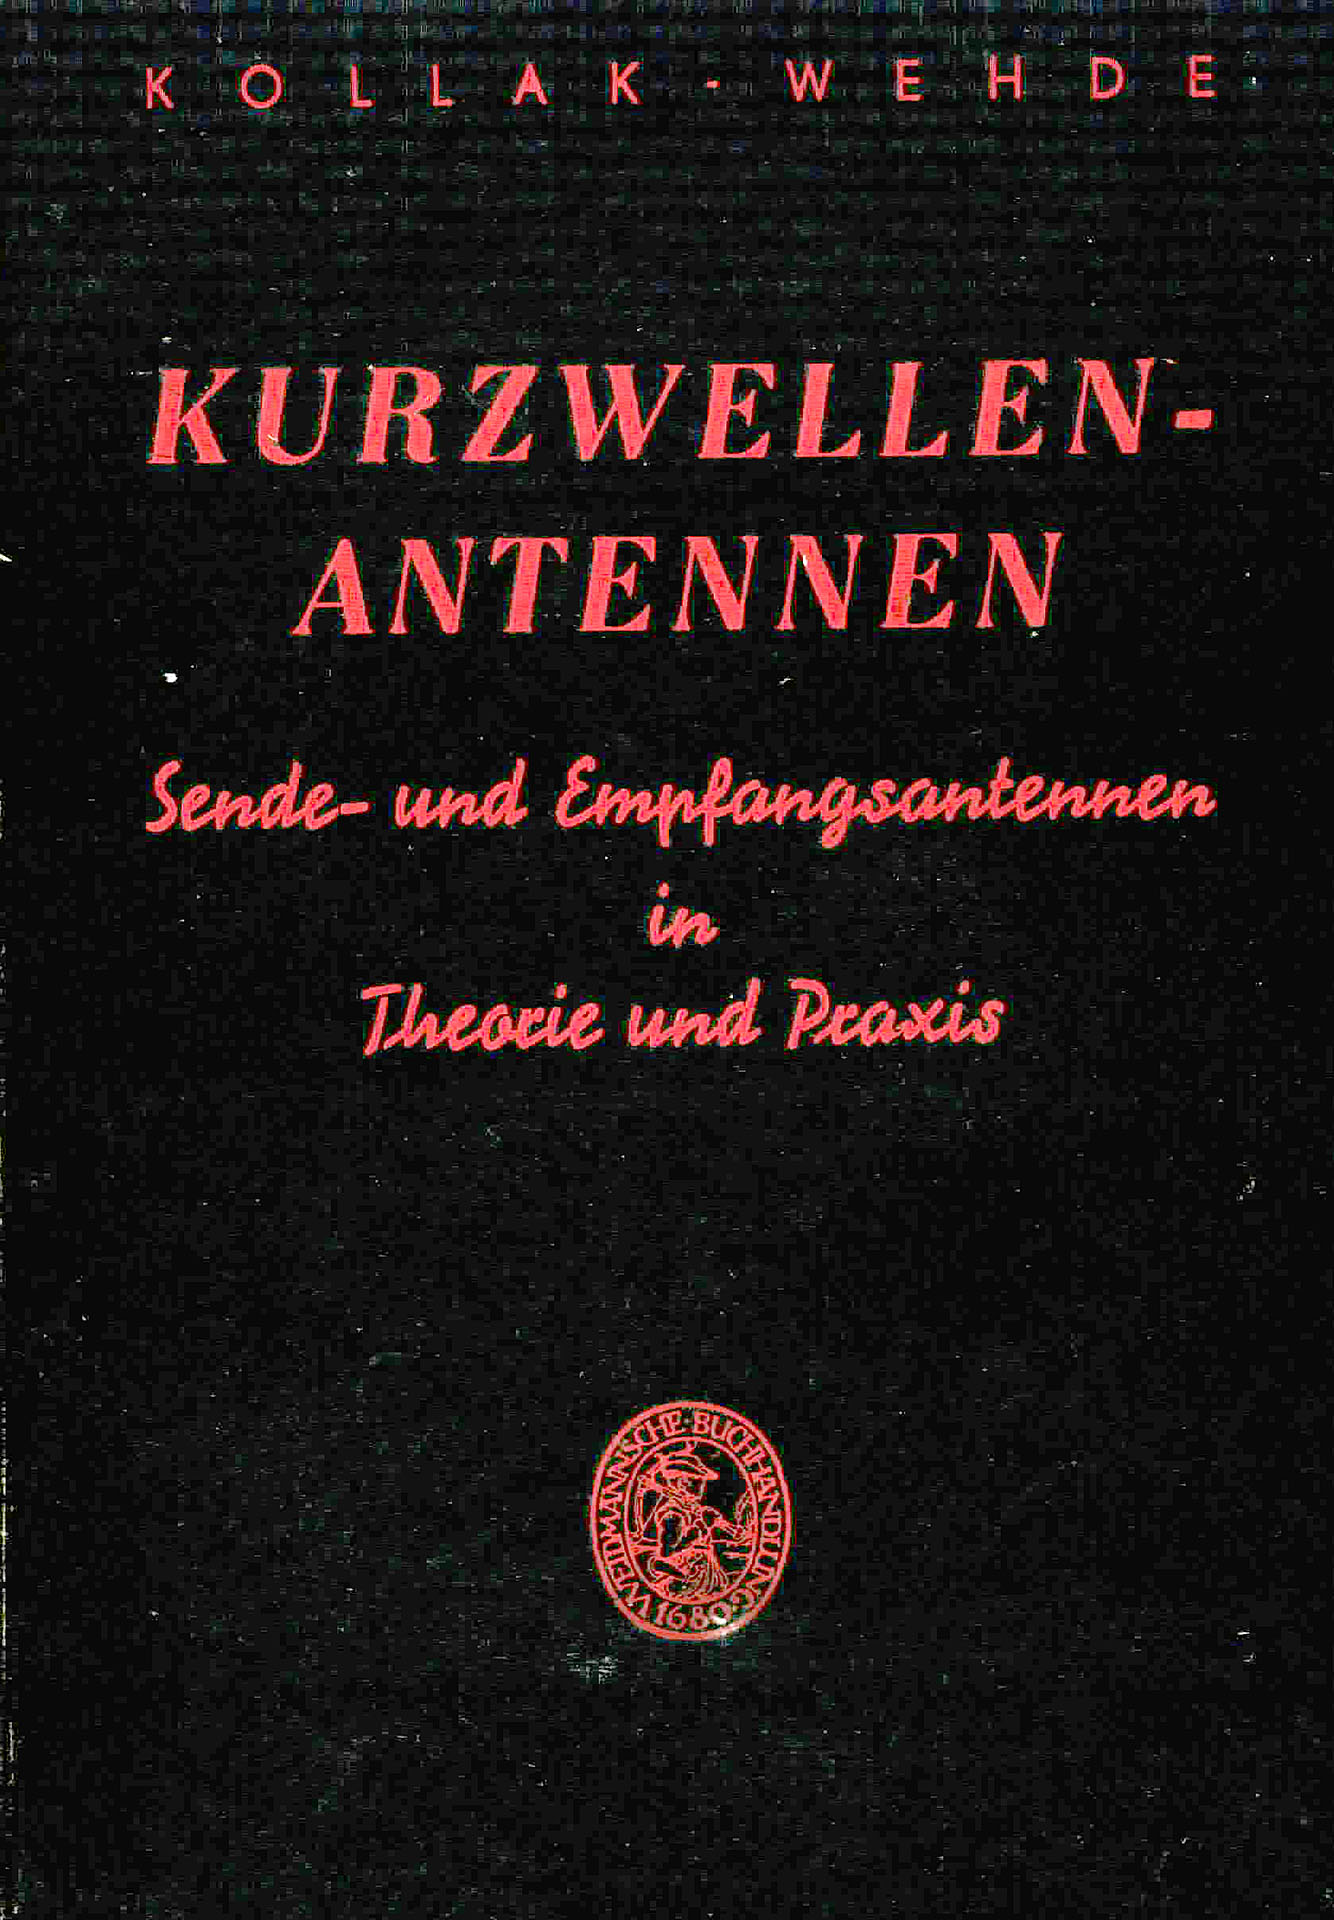 Kurzwellen - Antennen - Kollak, R. / Wehde, H.